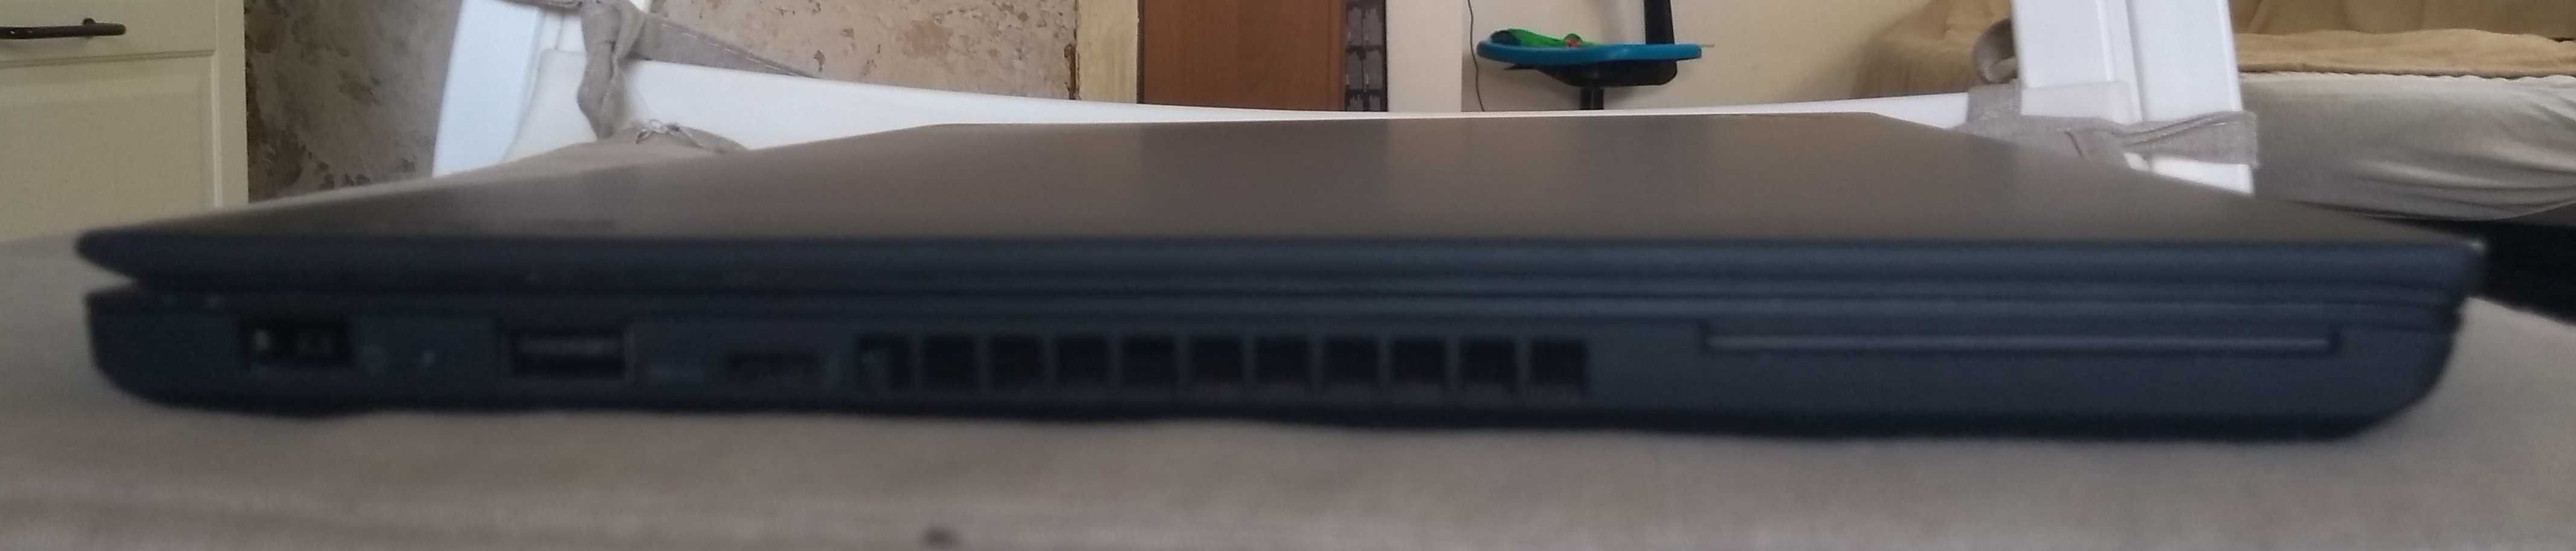 laptop LENOVO ThinkPad T470 Praktycznie nowy! +Stacja dokująca